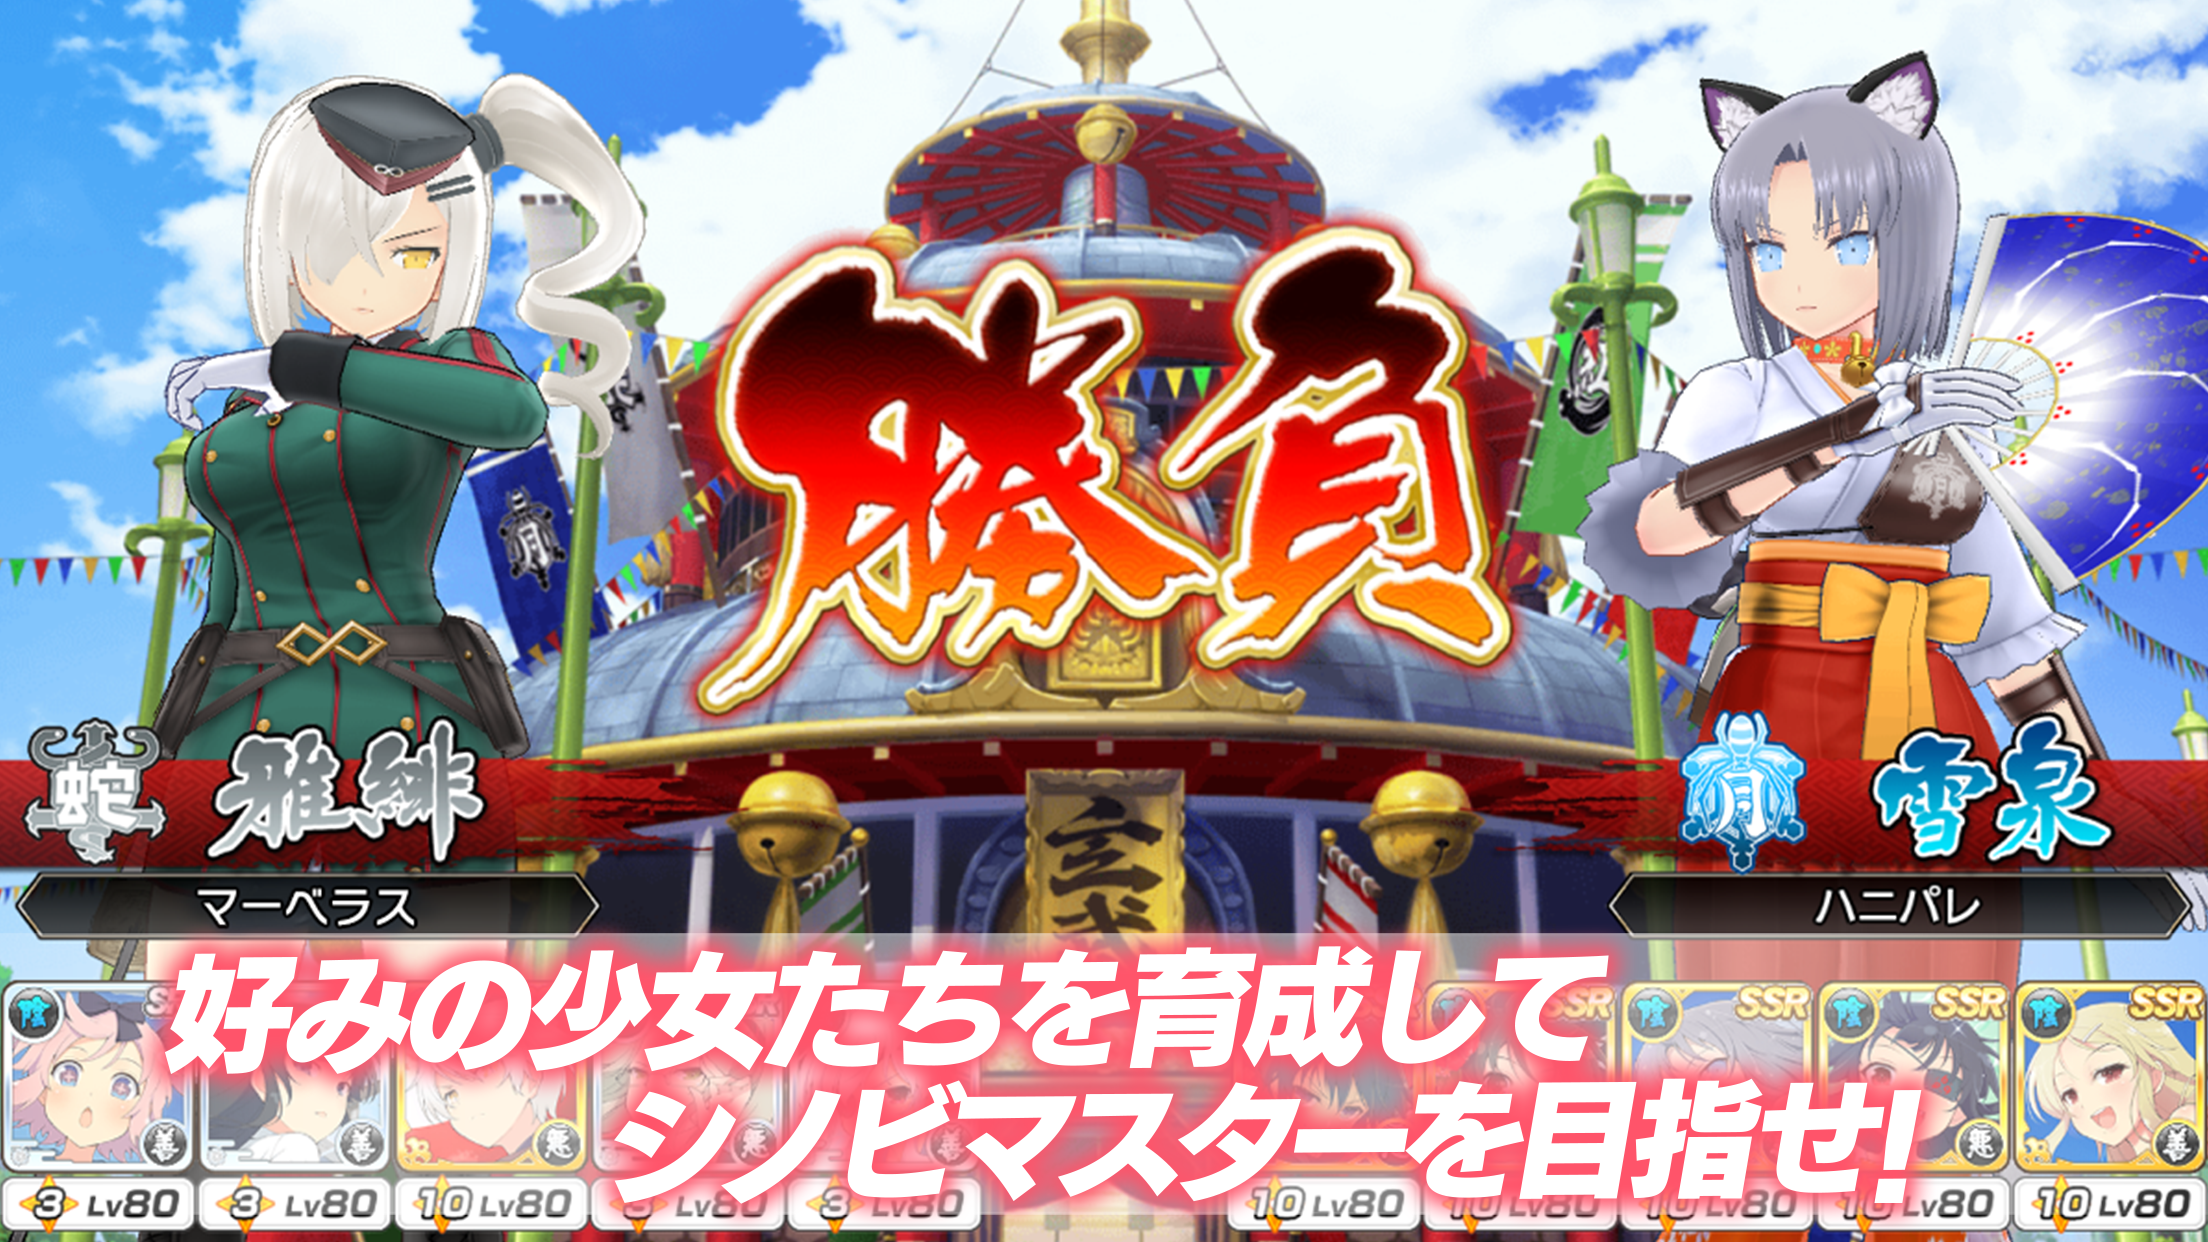 Senran Kagura: New Link [Android/iOS] Gameplay 